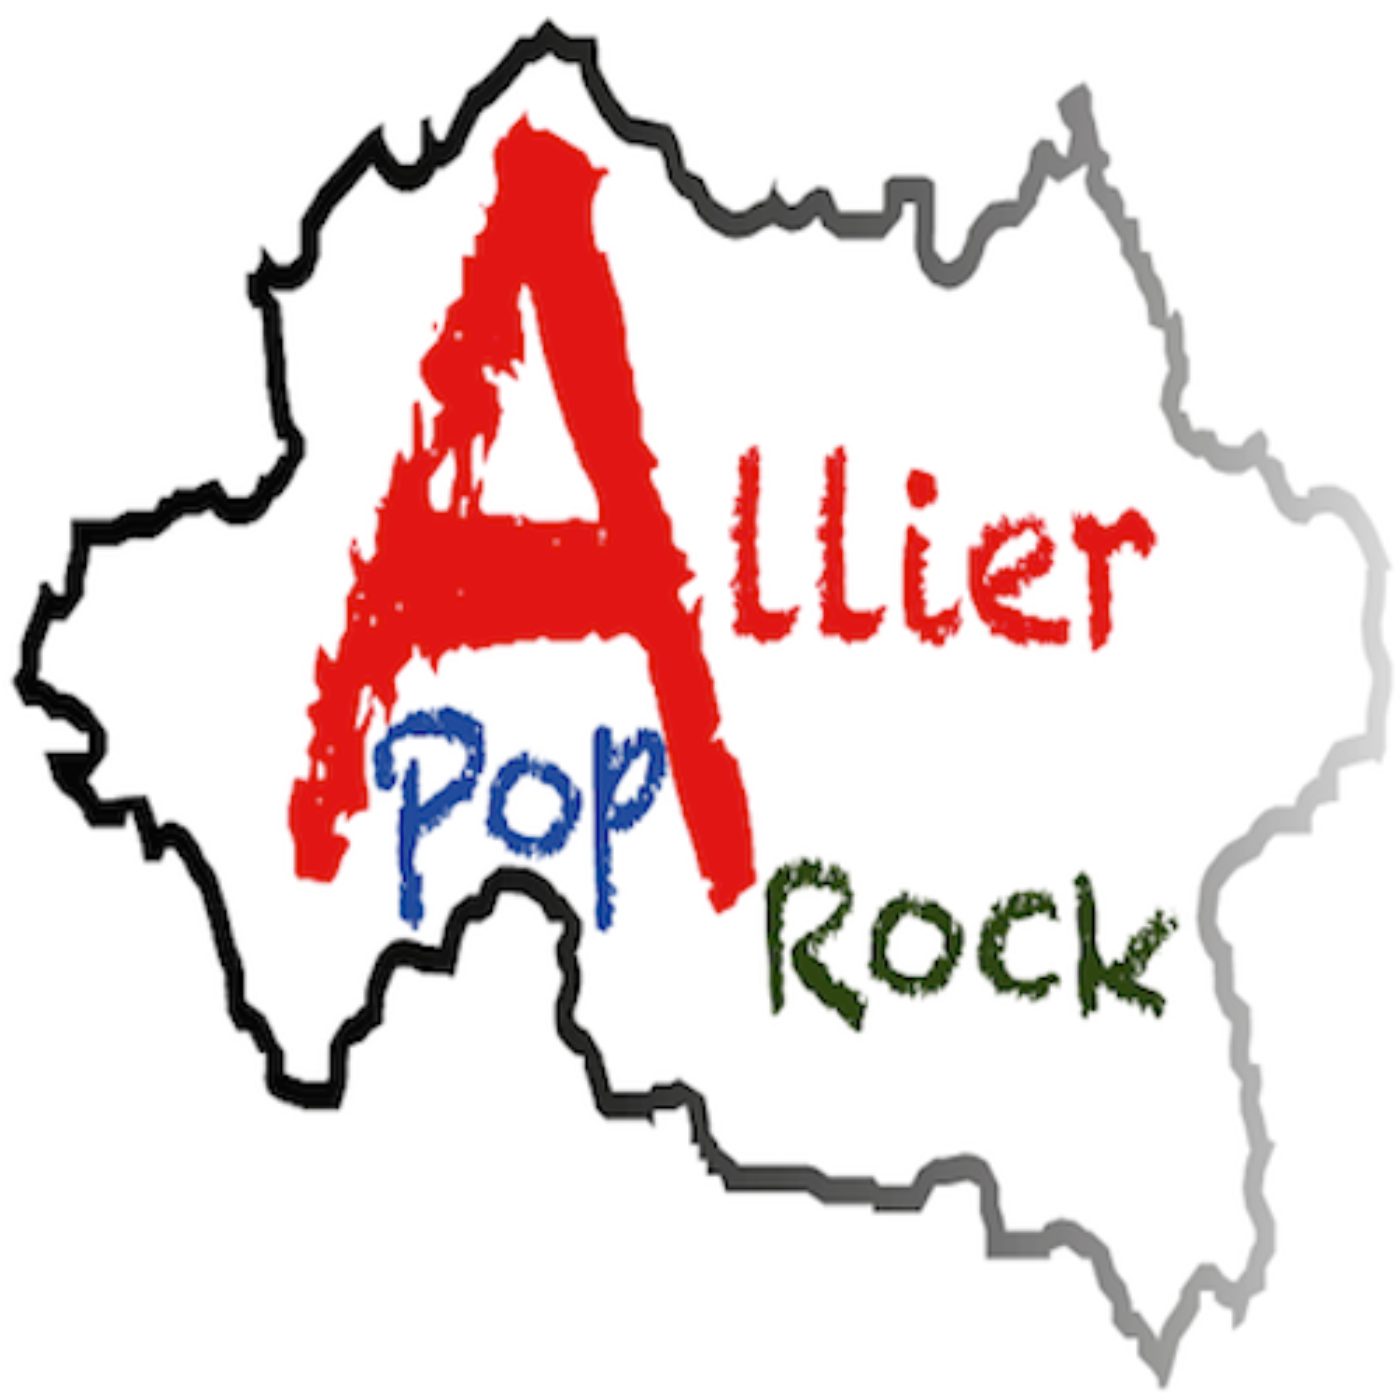 Journal d'Allier Pop Rock